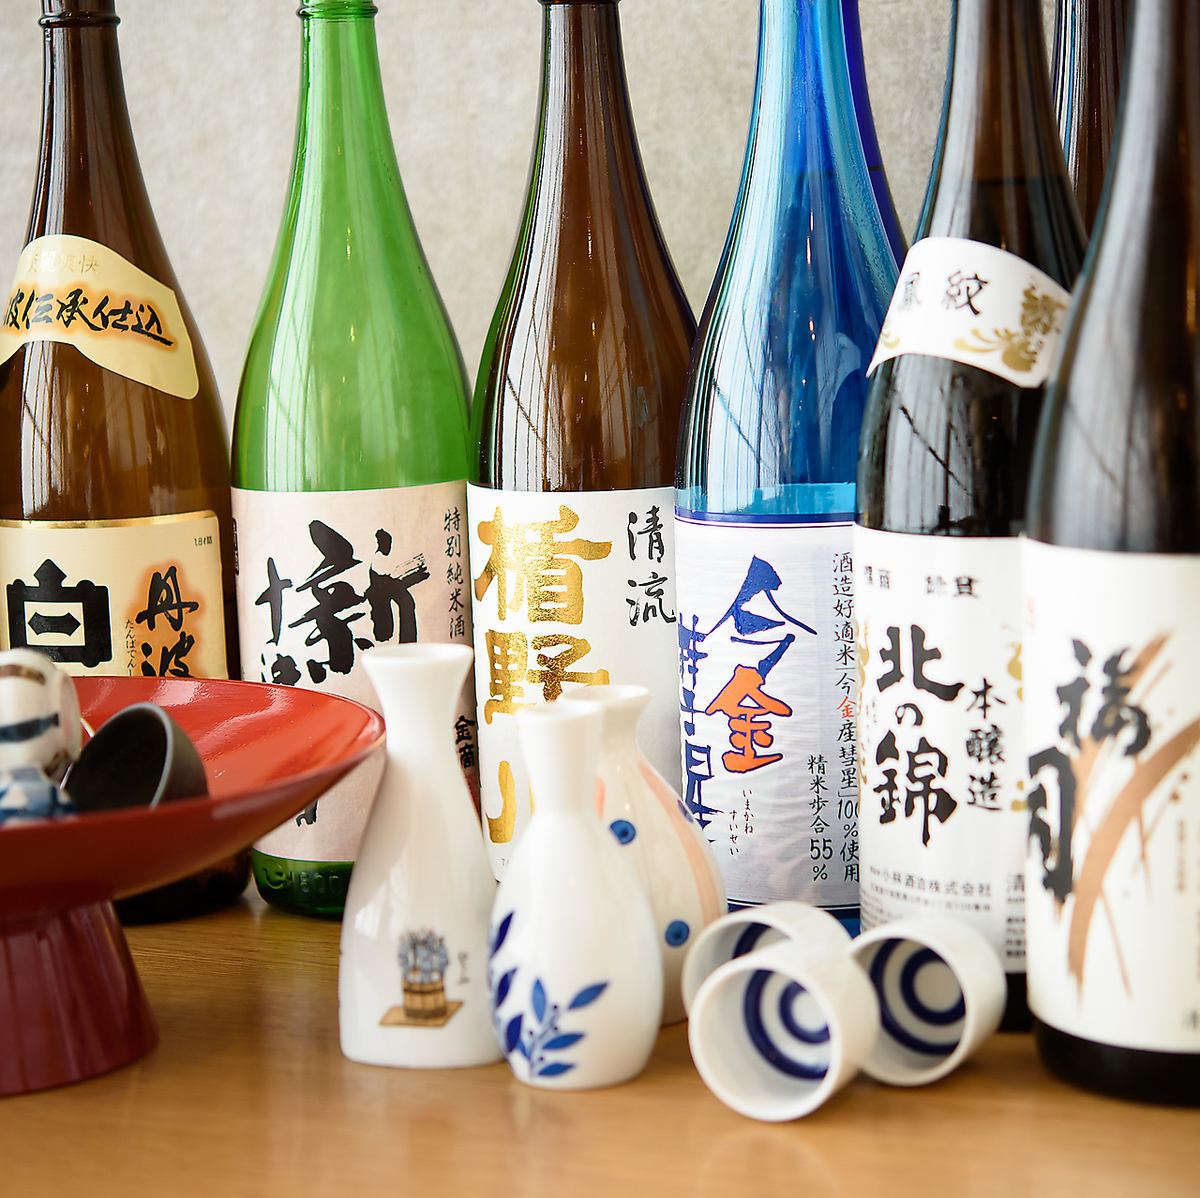 일본 술 술사가 엄선한 술을 다수 준비하고 있습니다.